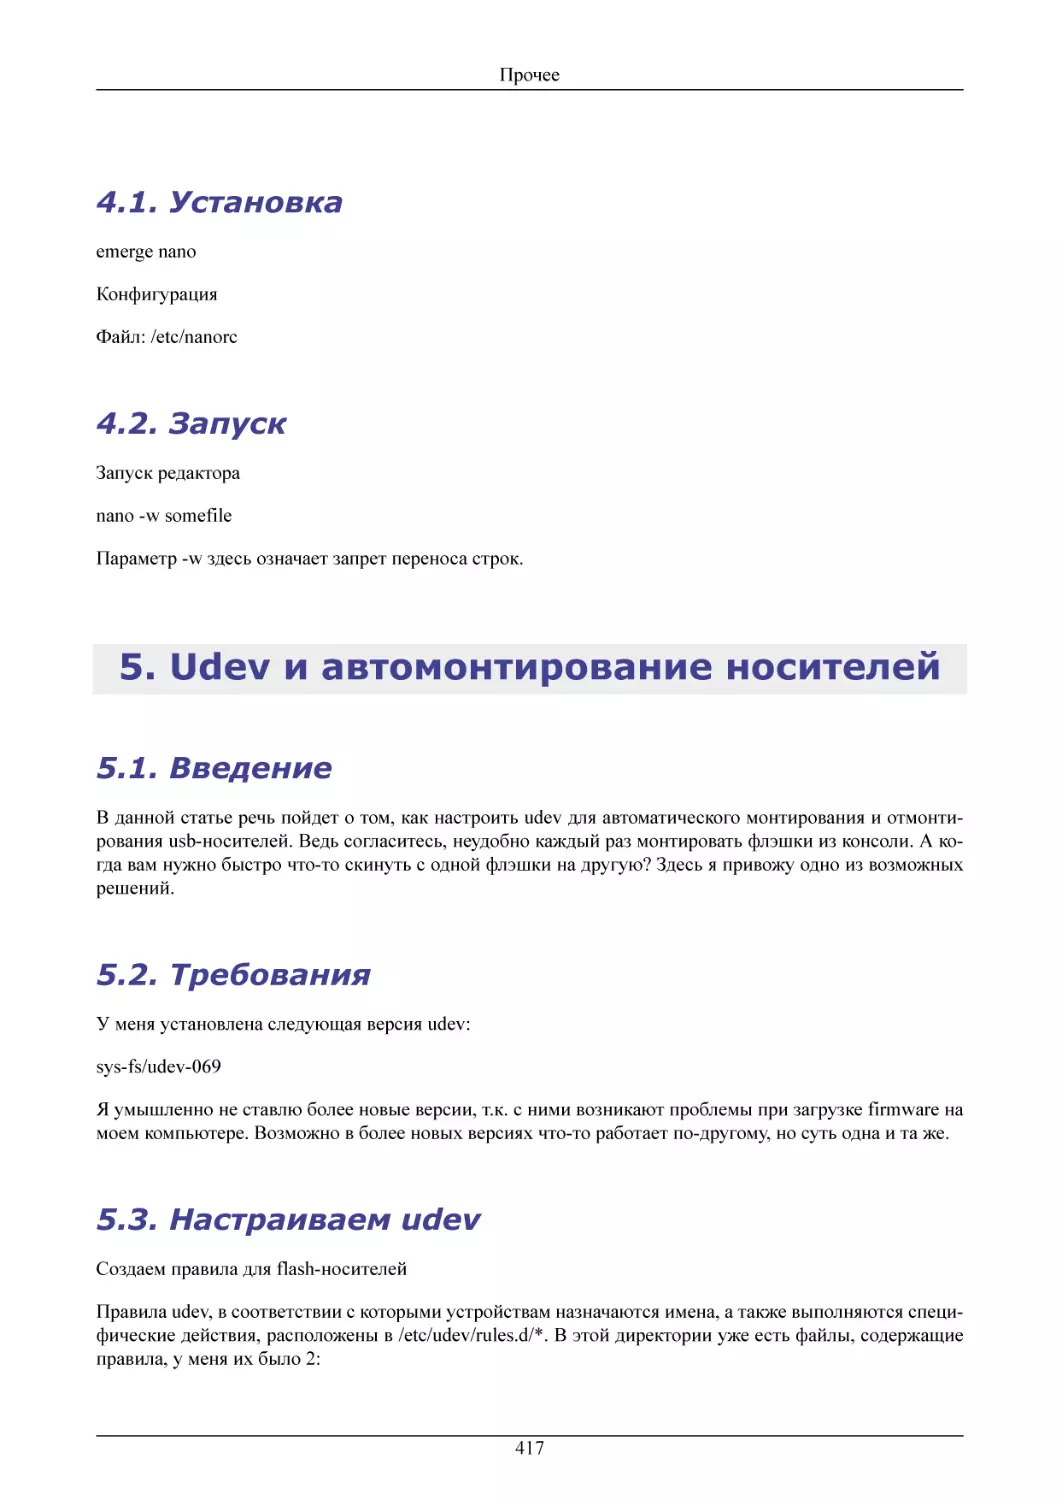 Установка
Запуск
Udev и автомонтирование носителей
Введение
Требования
Настраиваем udev